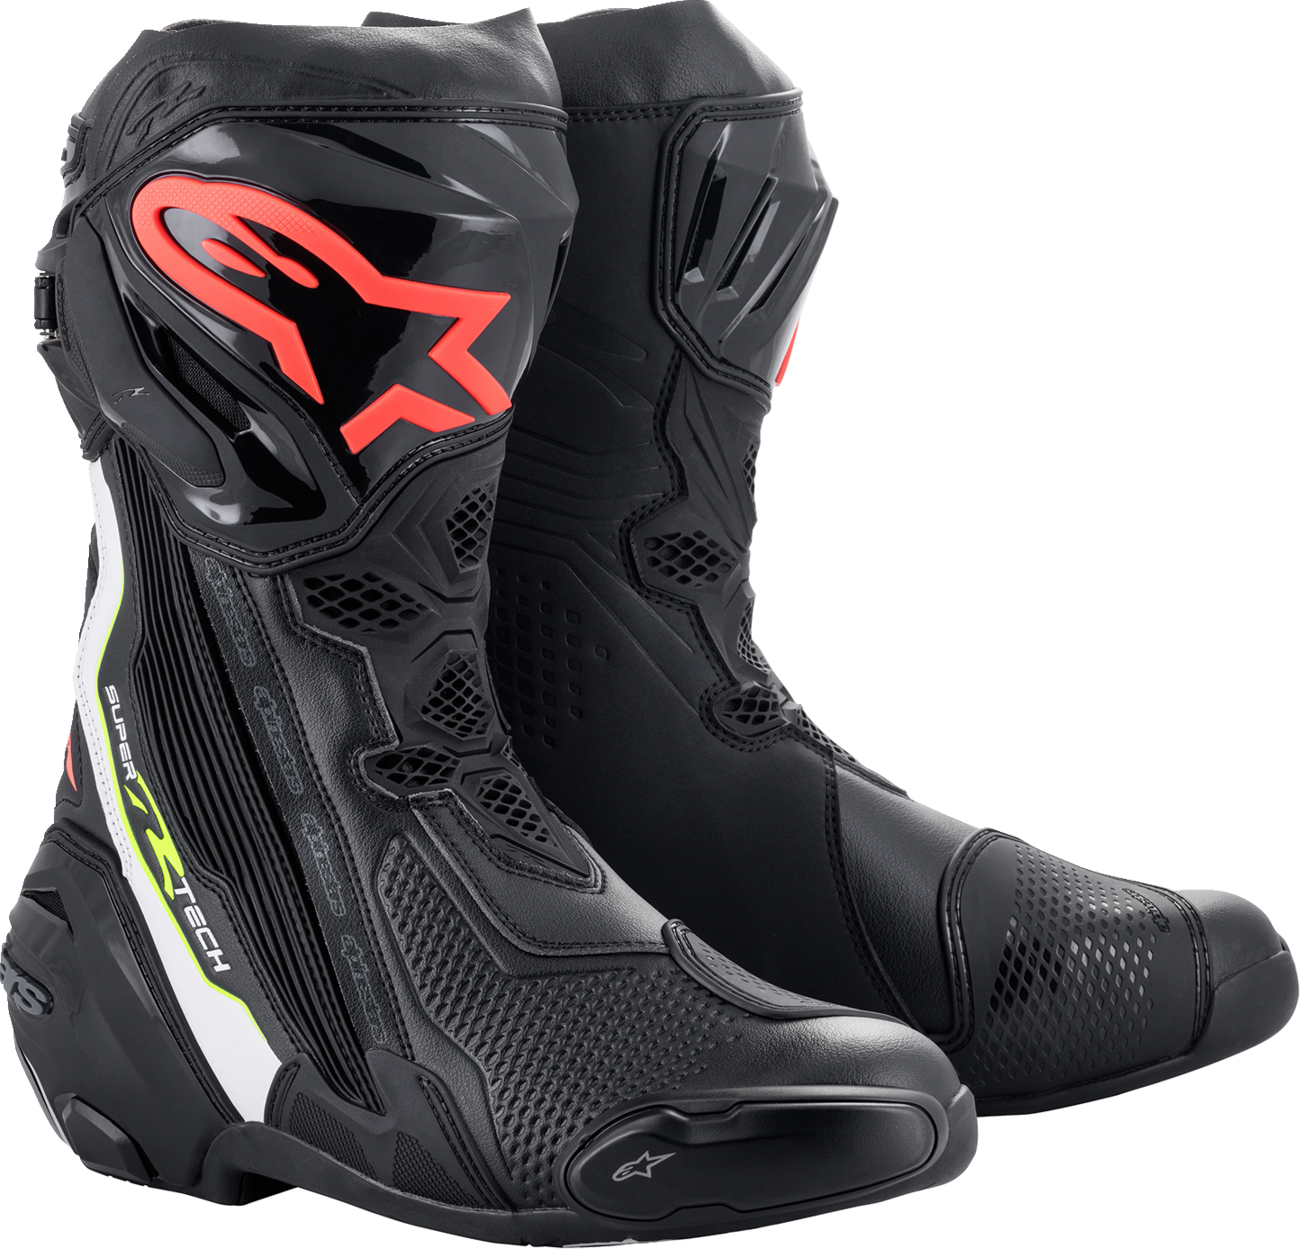 ALPINESTARS Supertech R Boots - Black/Red - US 12.5 / EU 48 2220021-1236-48